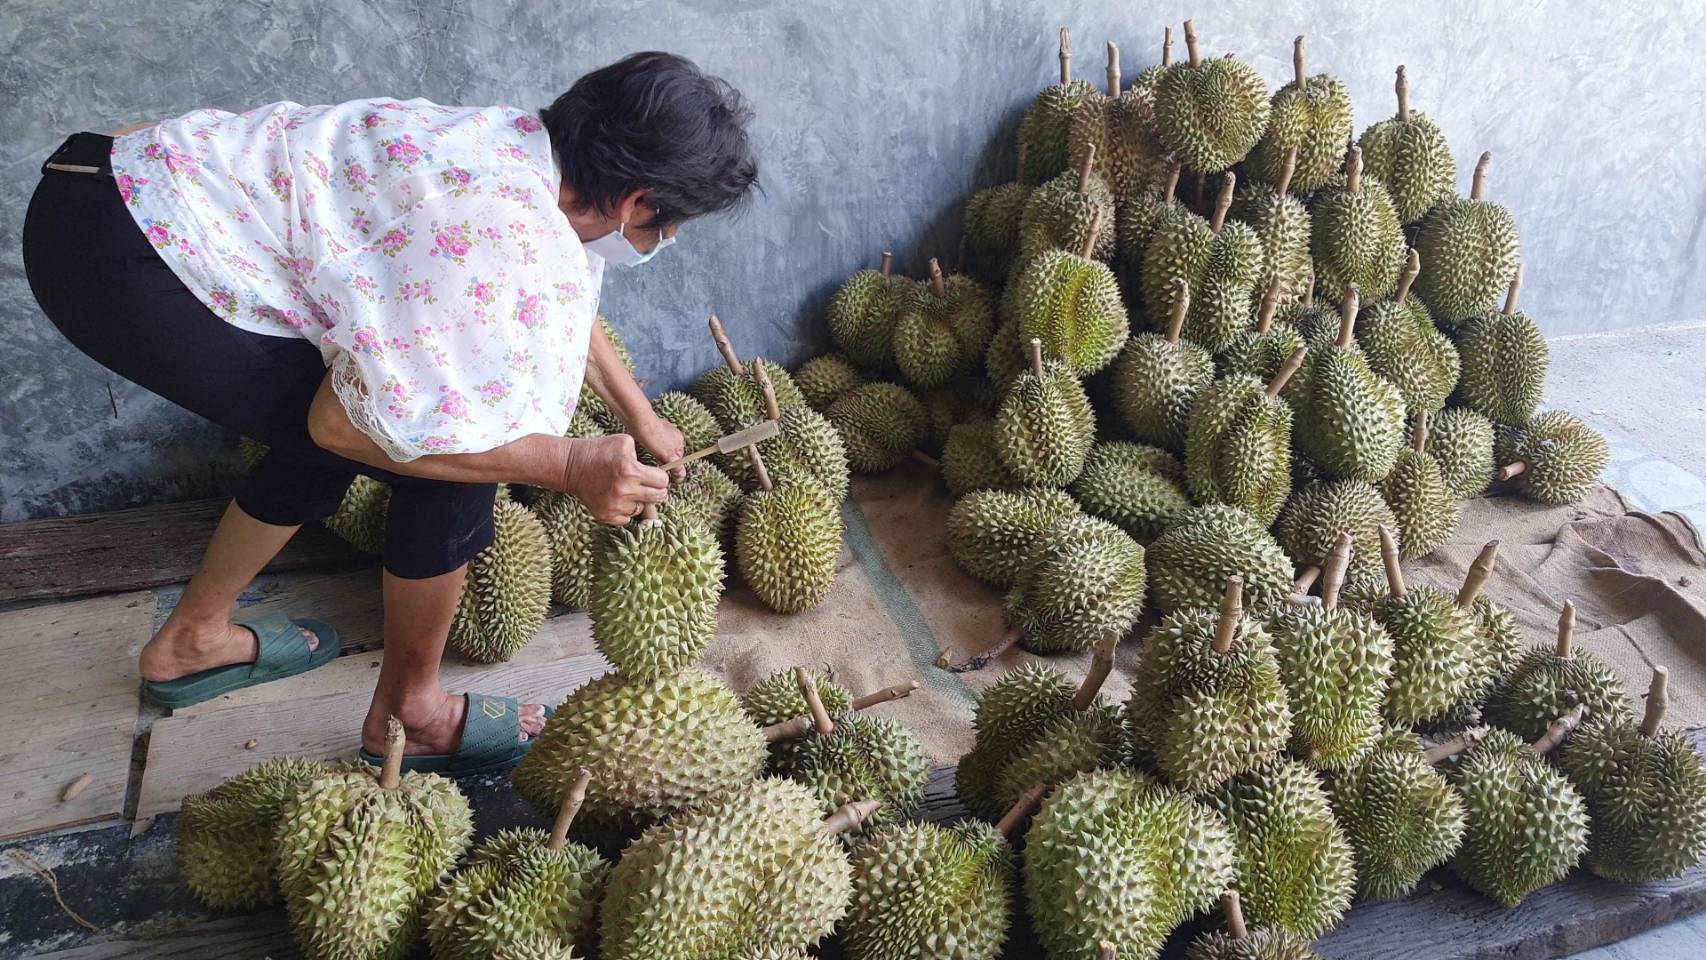 durian seller